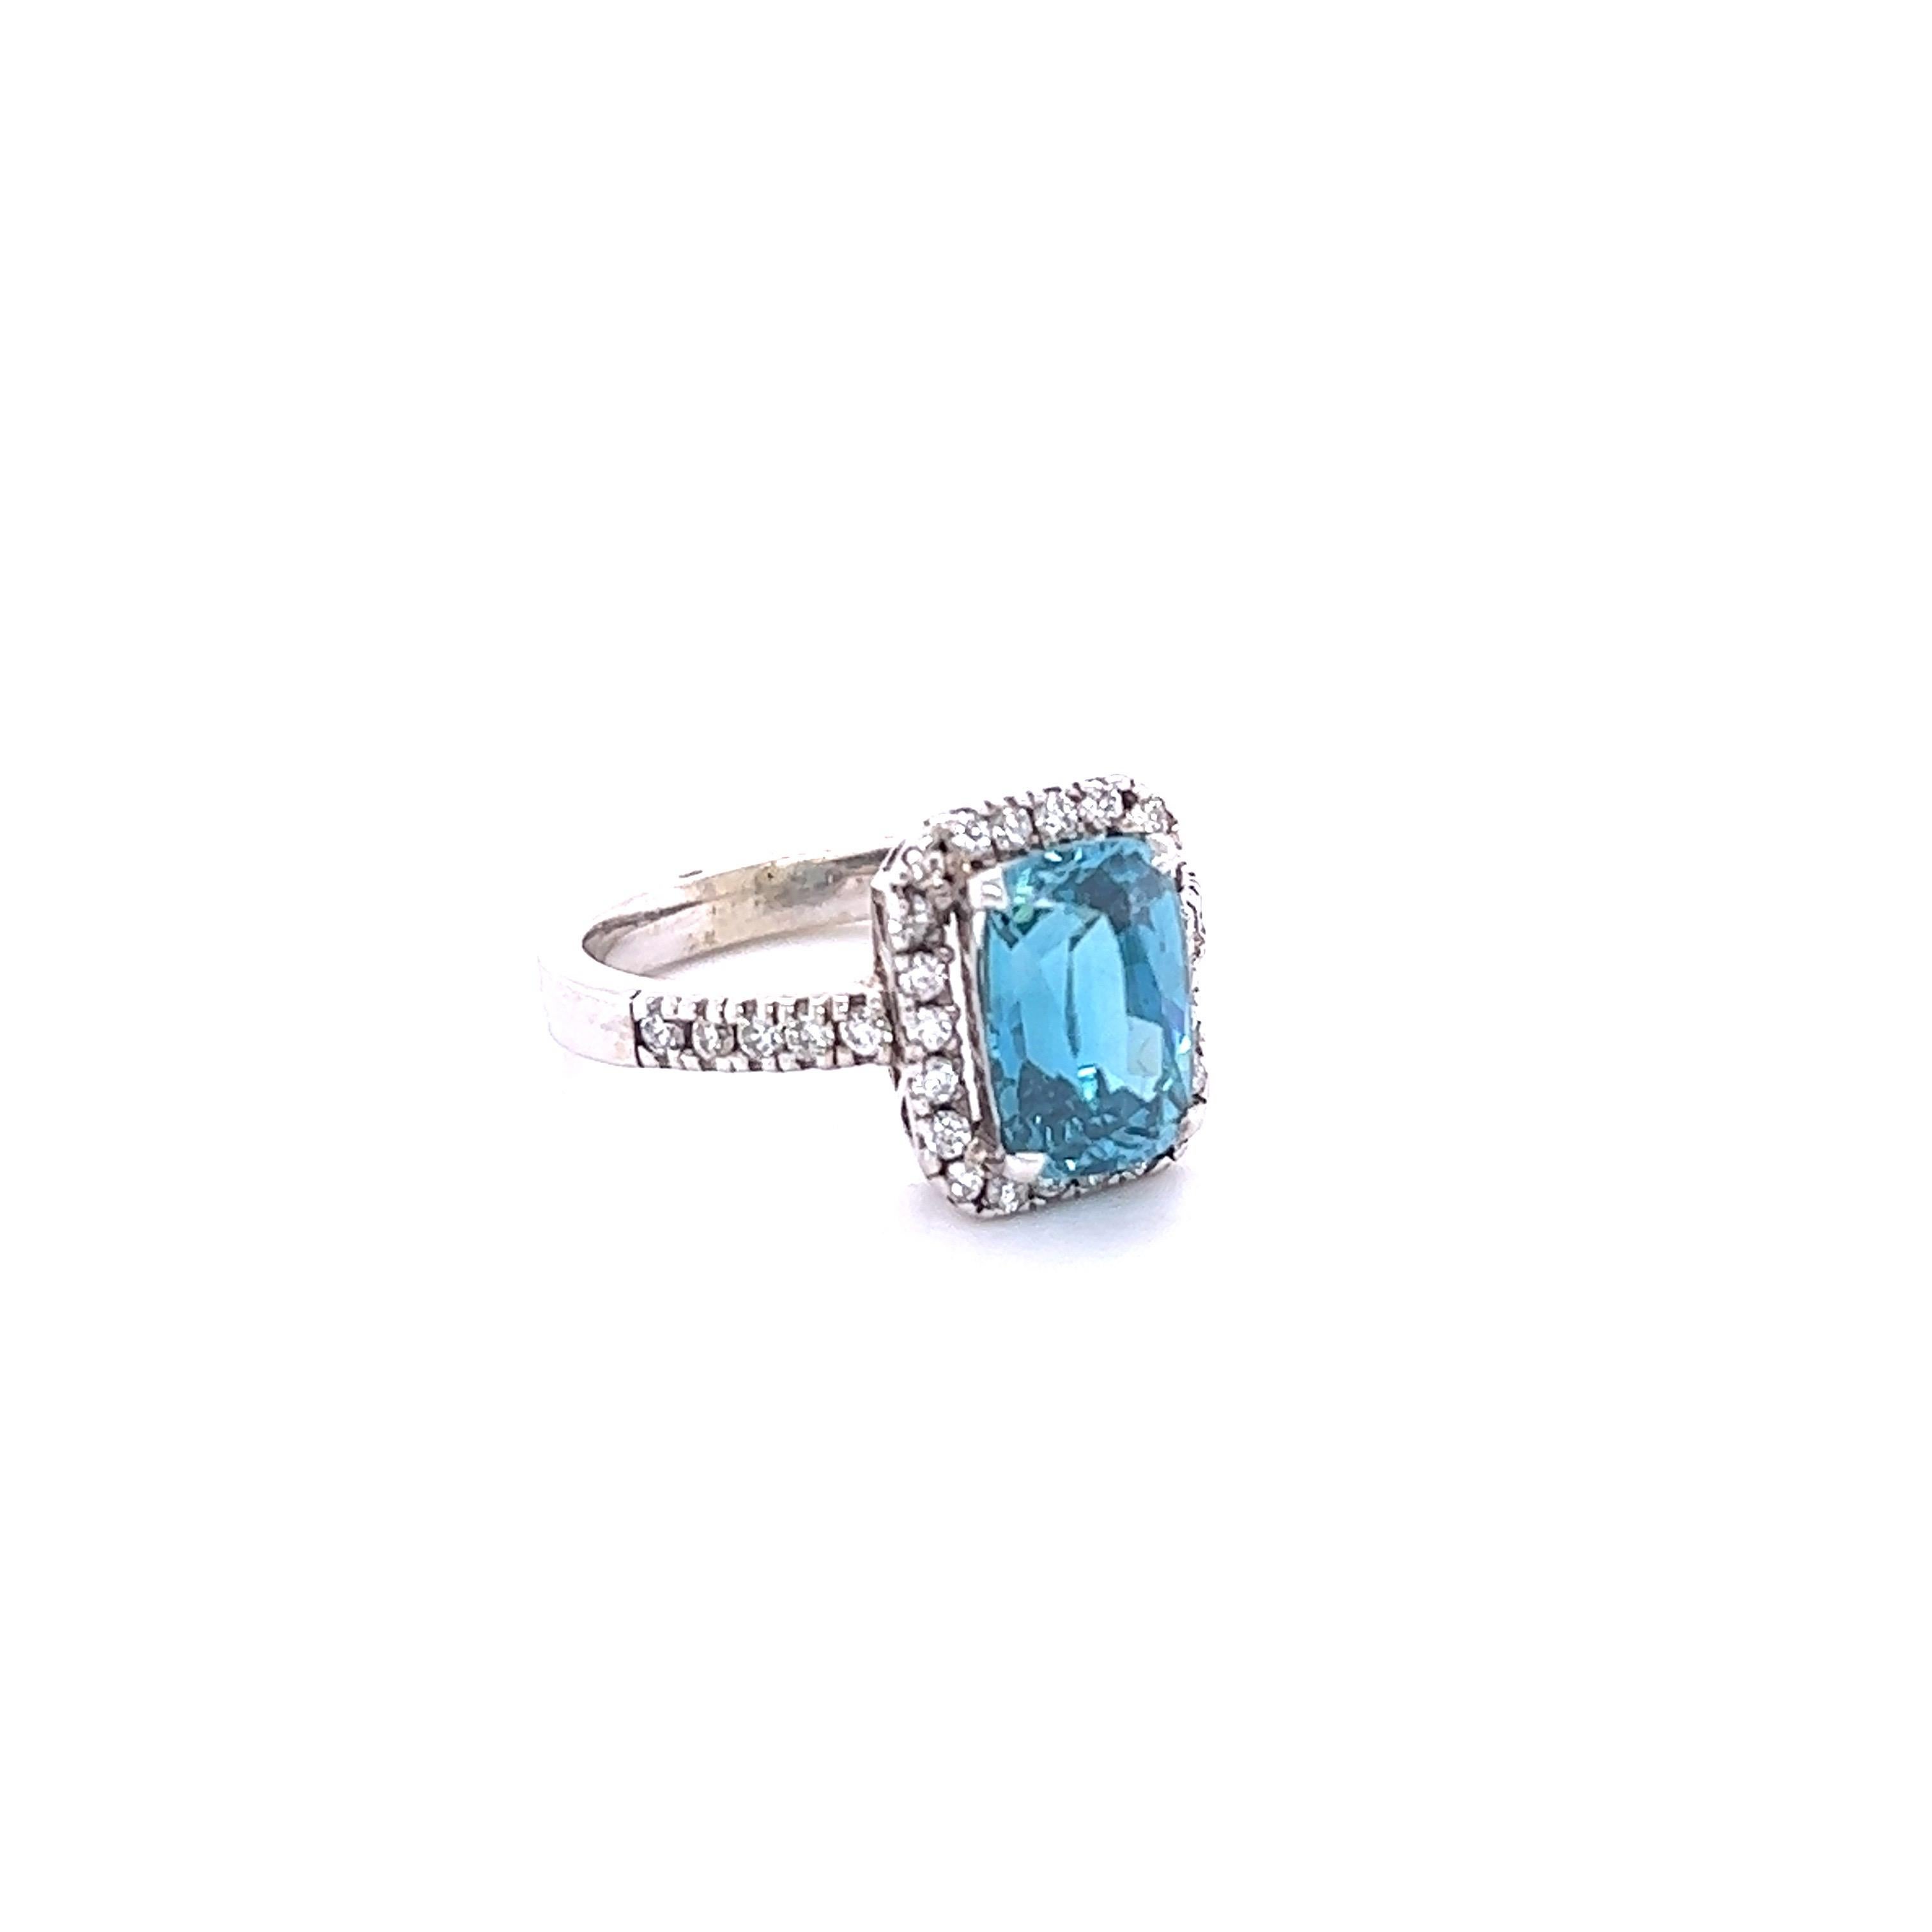 Blauer Zirkon ist ein Naturstein, der hauptsächlich in Sri Lanka, Myanmar und Australien abgebaut wird.  
Dieser Ring hat einen blauen Zirkon im Smaragd-Oval-Schliff, der 4,66 Karat wiegt und von 32 Diamanten im Rundschliff umgeben ist, die 0,43